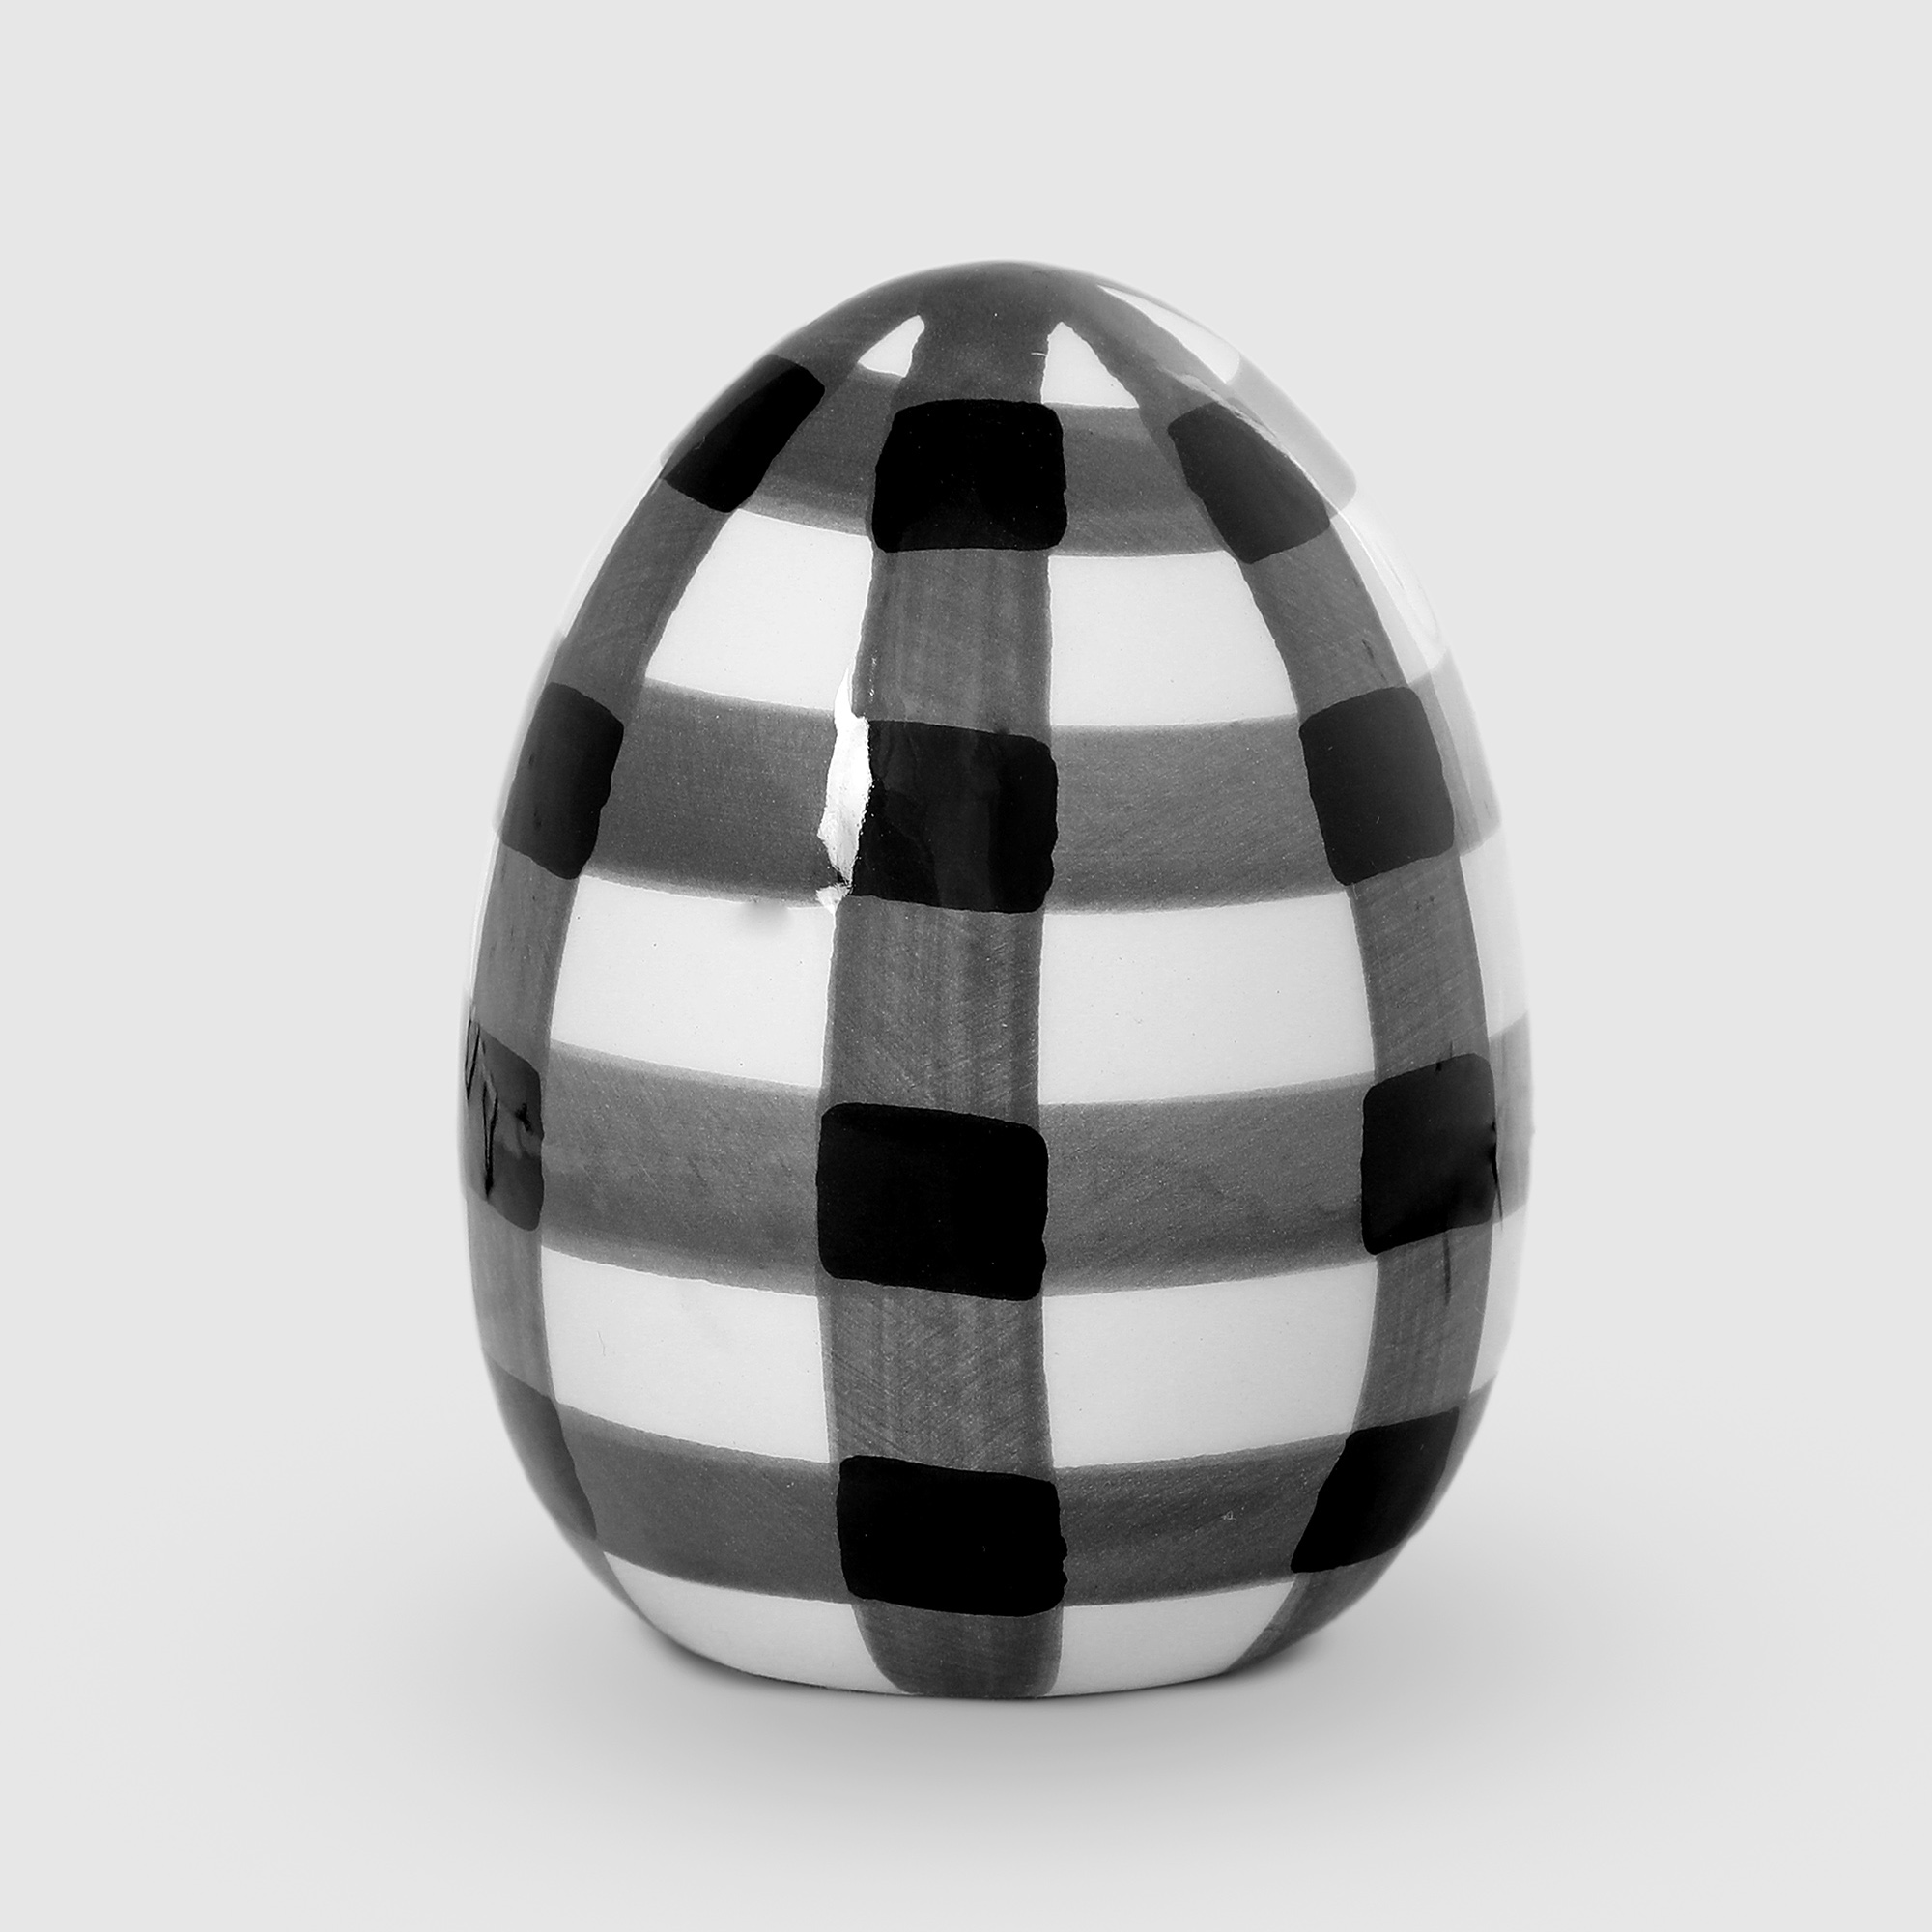 Яйцо декоративное Dekor pap 6,8x6,8x9 см белый-черный